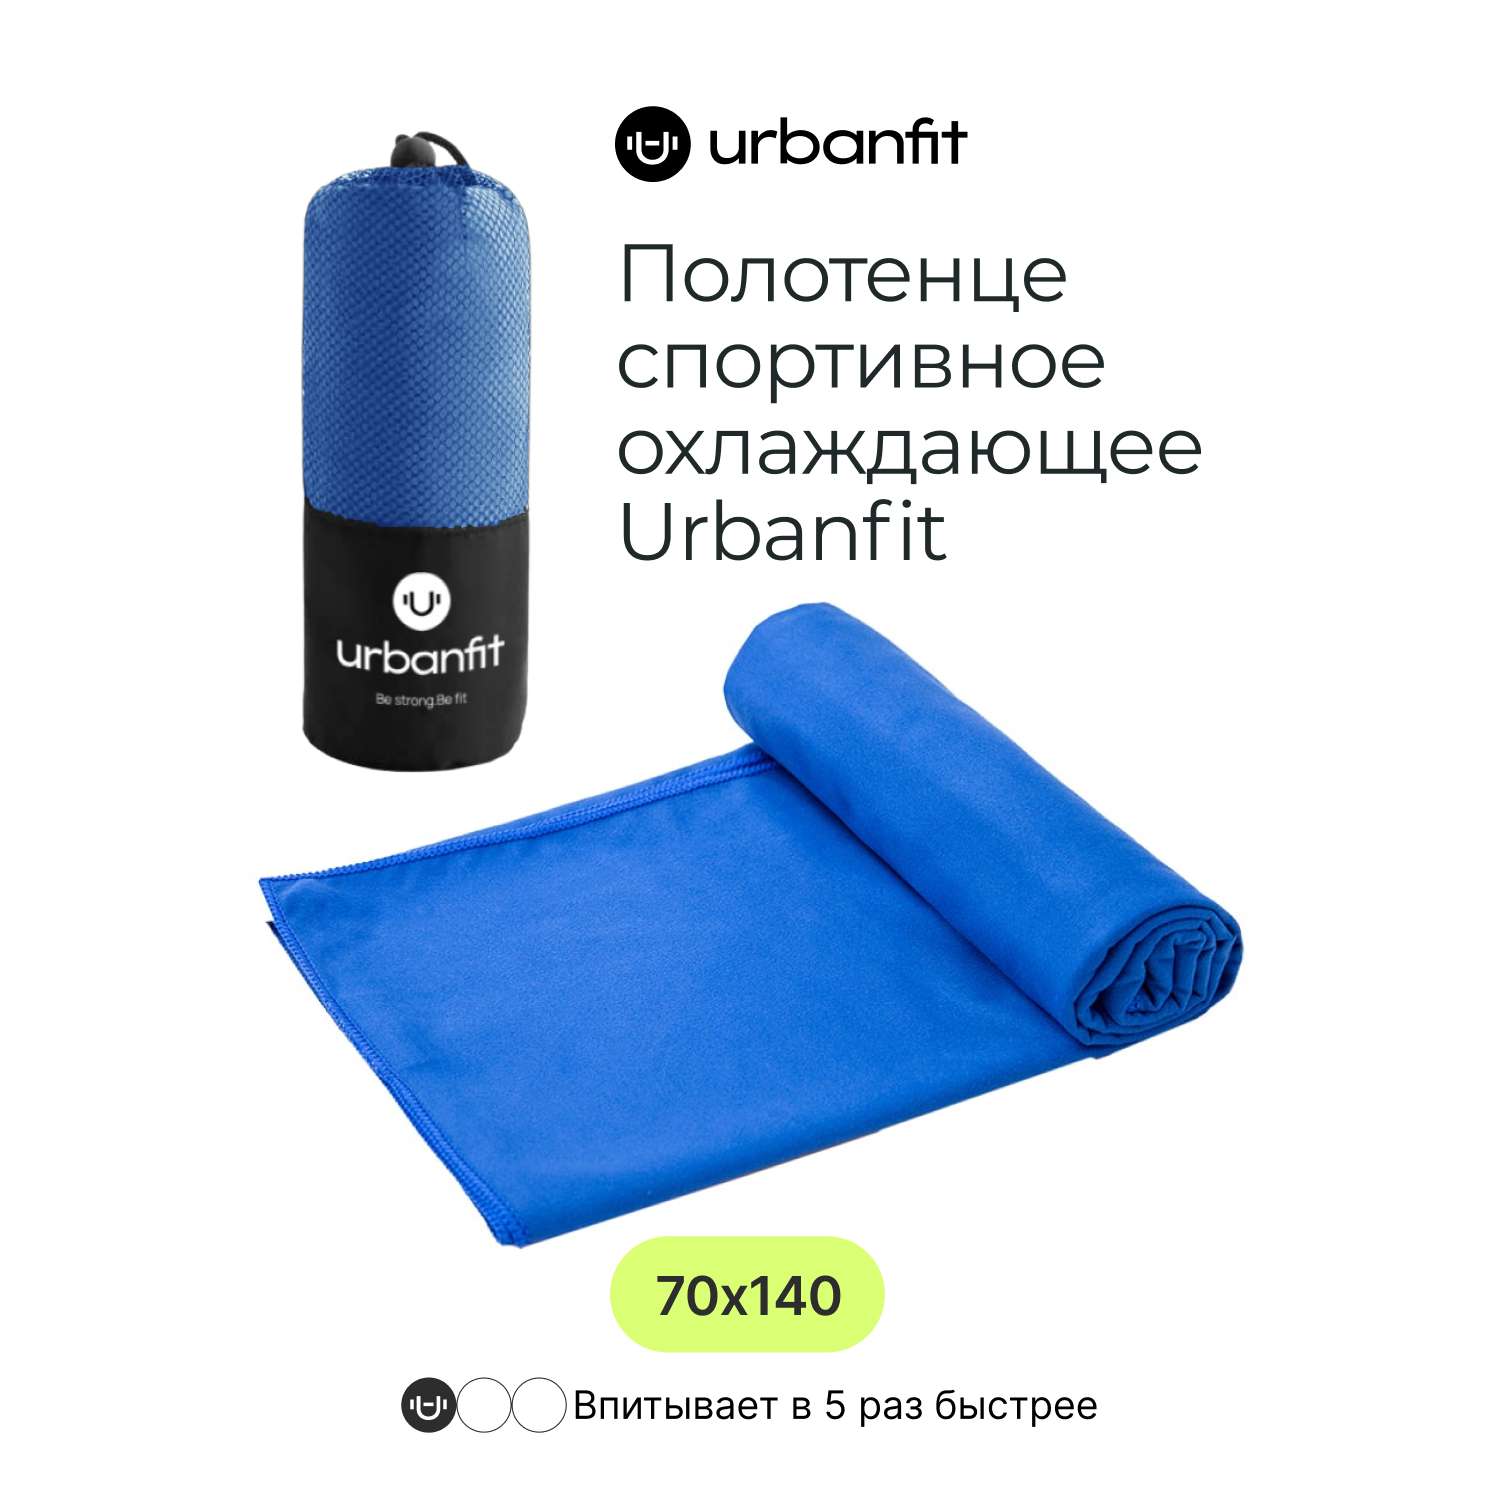 Полотенце спортивное Urbanfit синий размер 70х140 см - фото 2